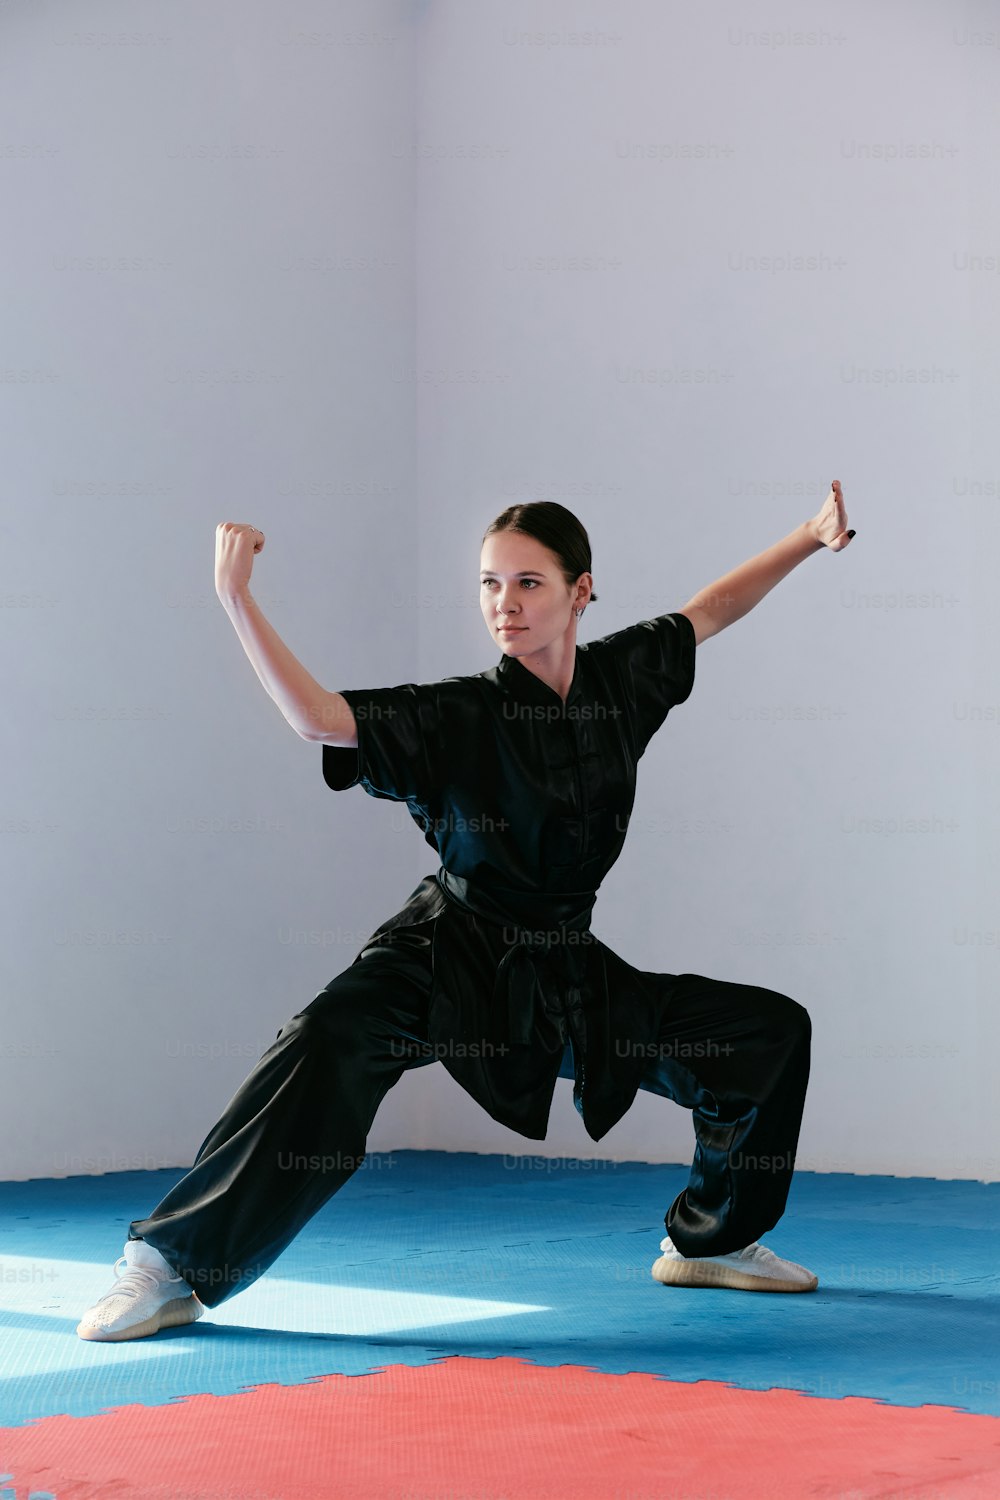 Una mujer con una camisa negra está haciendo una pose de karate